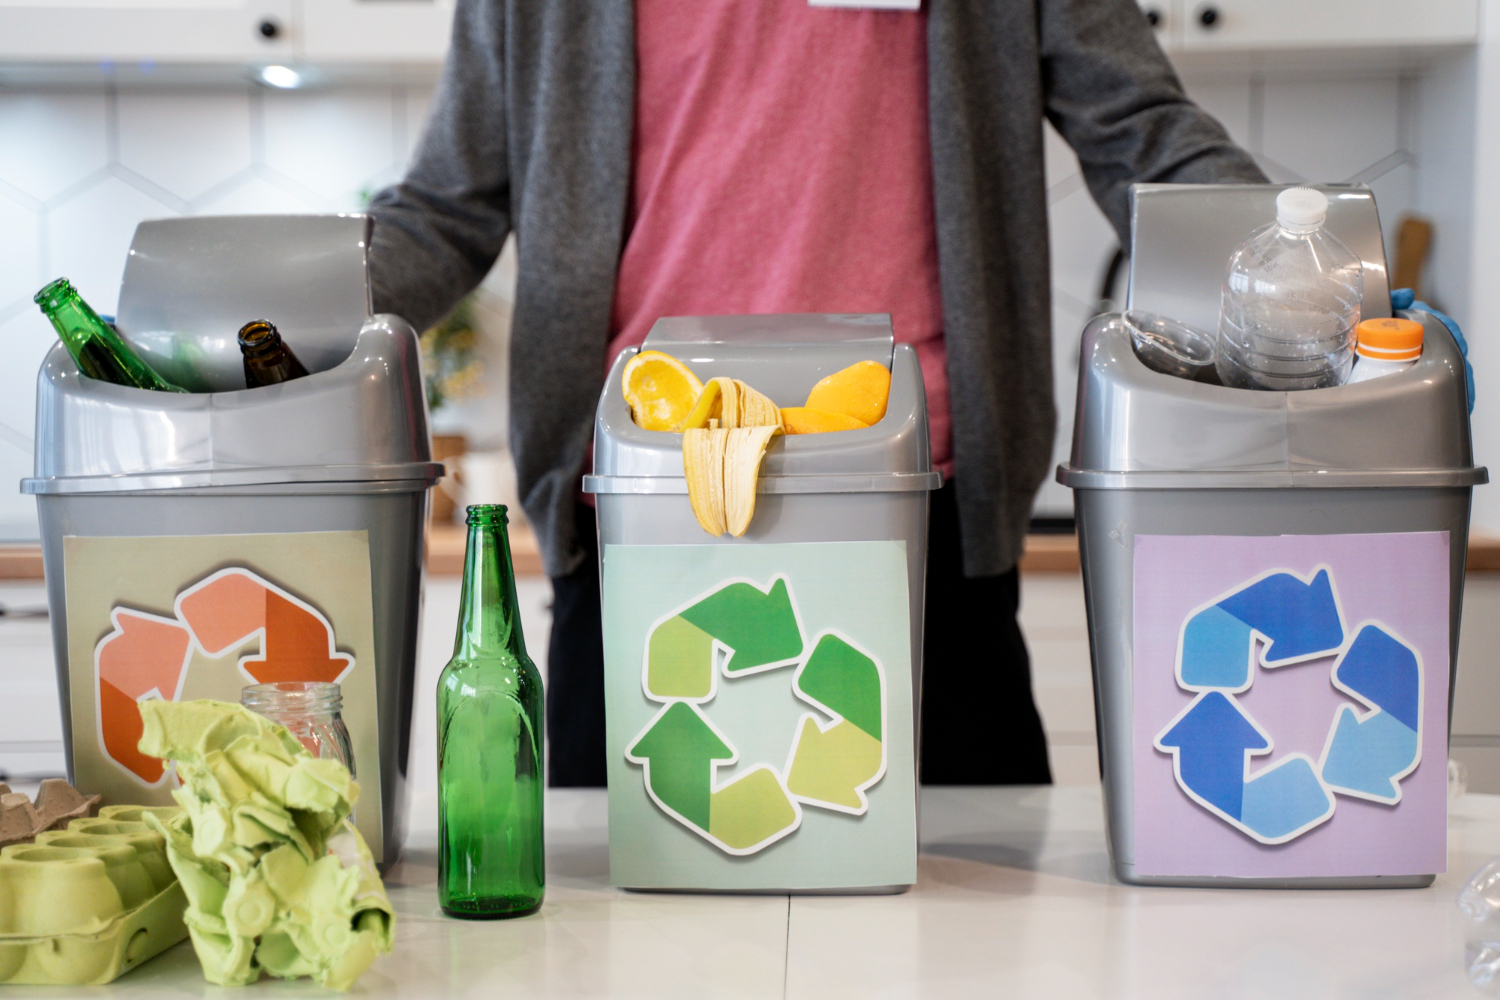 Trwają przygotowania do wdrożenia dużych zmian w zbiórce i recyklingu odpadów. Od przyszłego roku konsumenci będą musieli znacząco zmienić nawyki